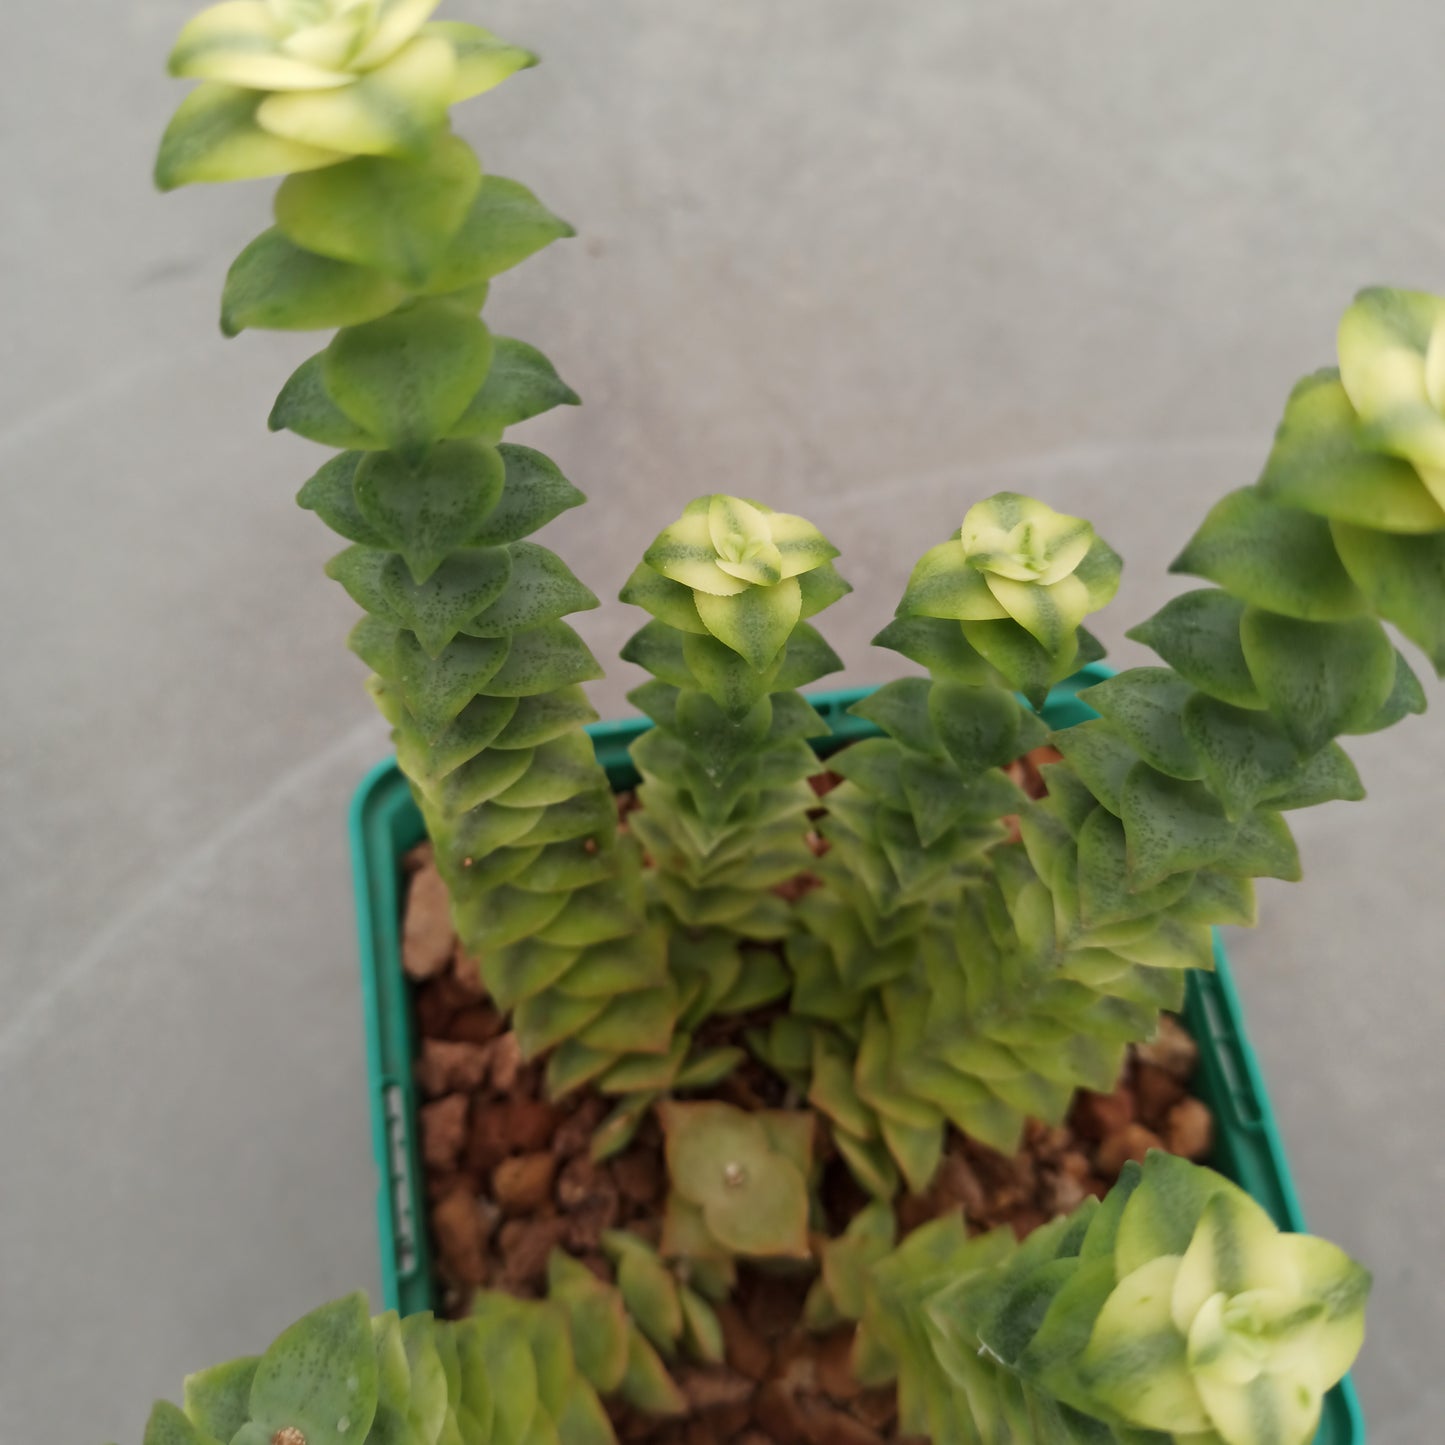 Crassula perforata variegata 'S' and 'M'